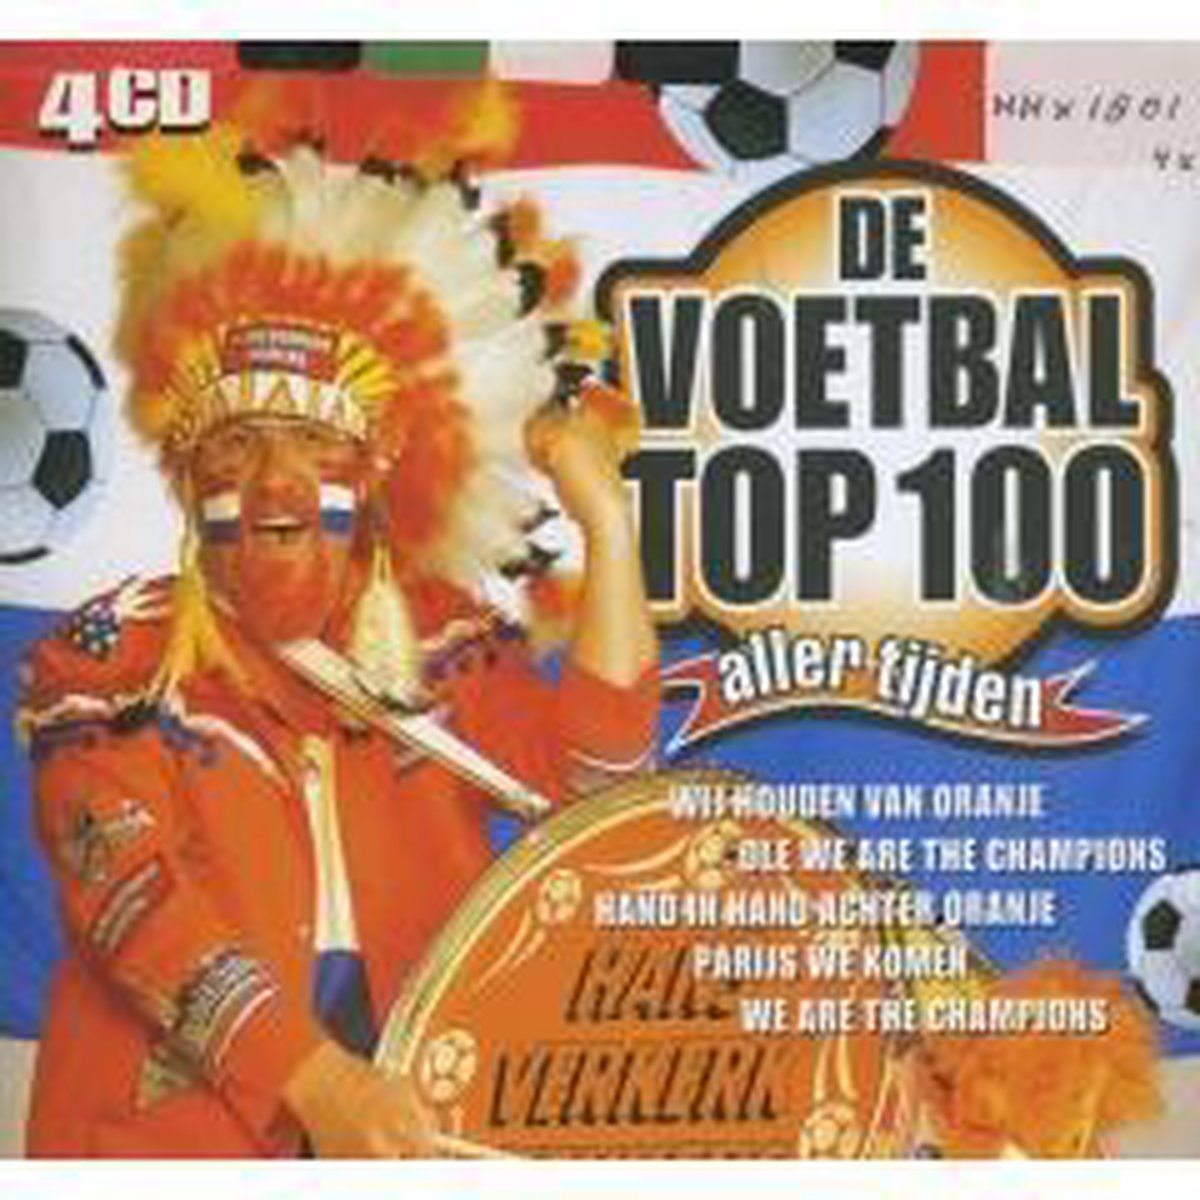 Voetbal Top 100 (4CD), Various | CD (album) | Muziek | bol.com